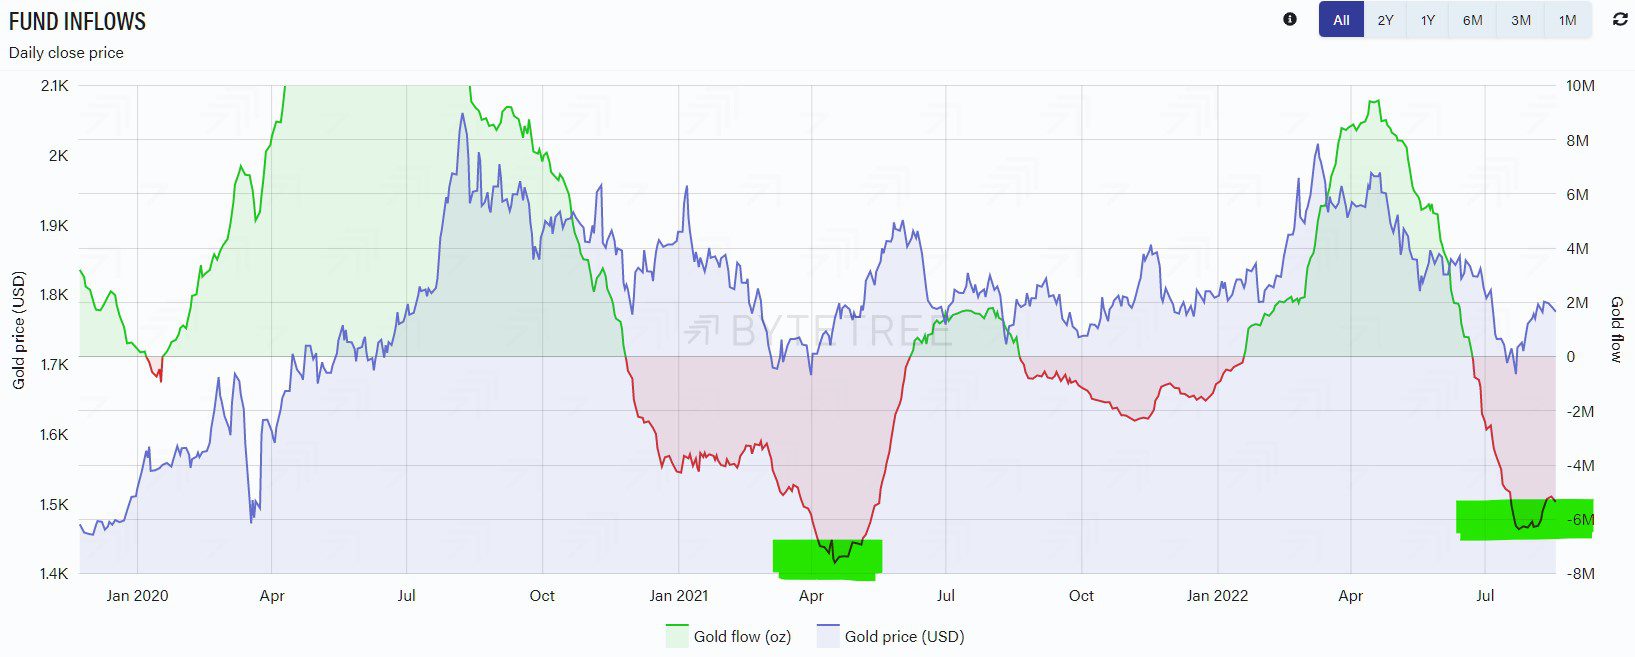 Gold ETF flows + Gold price